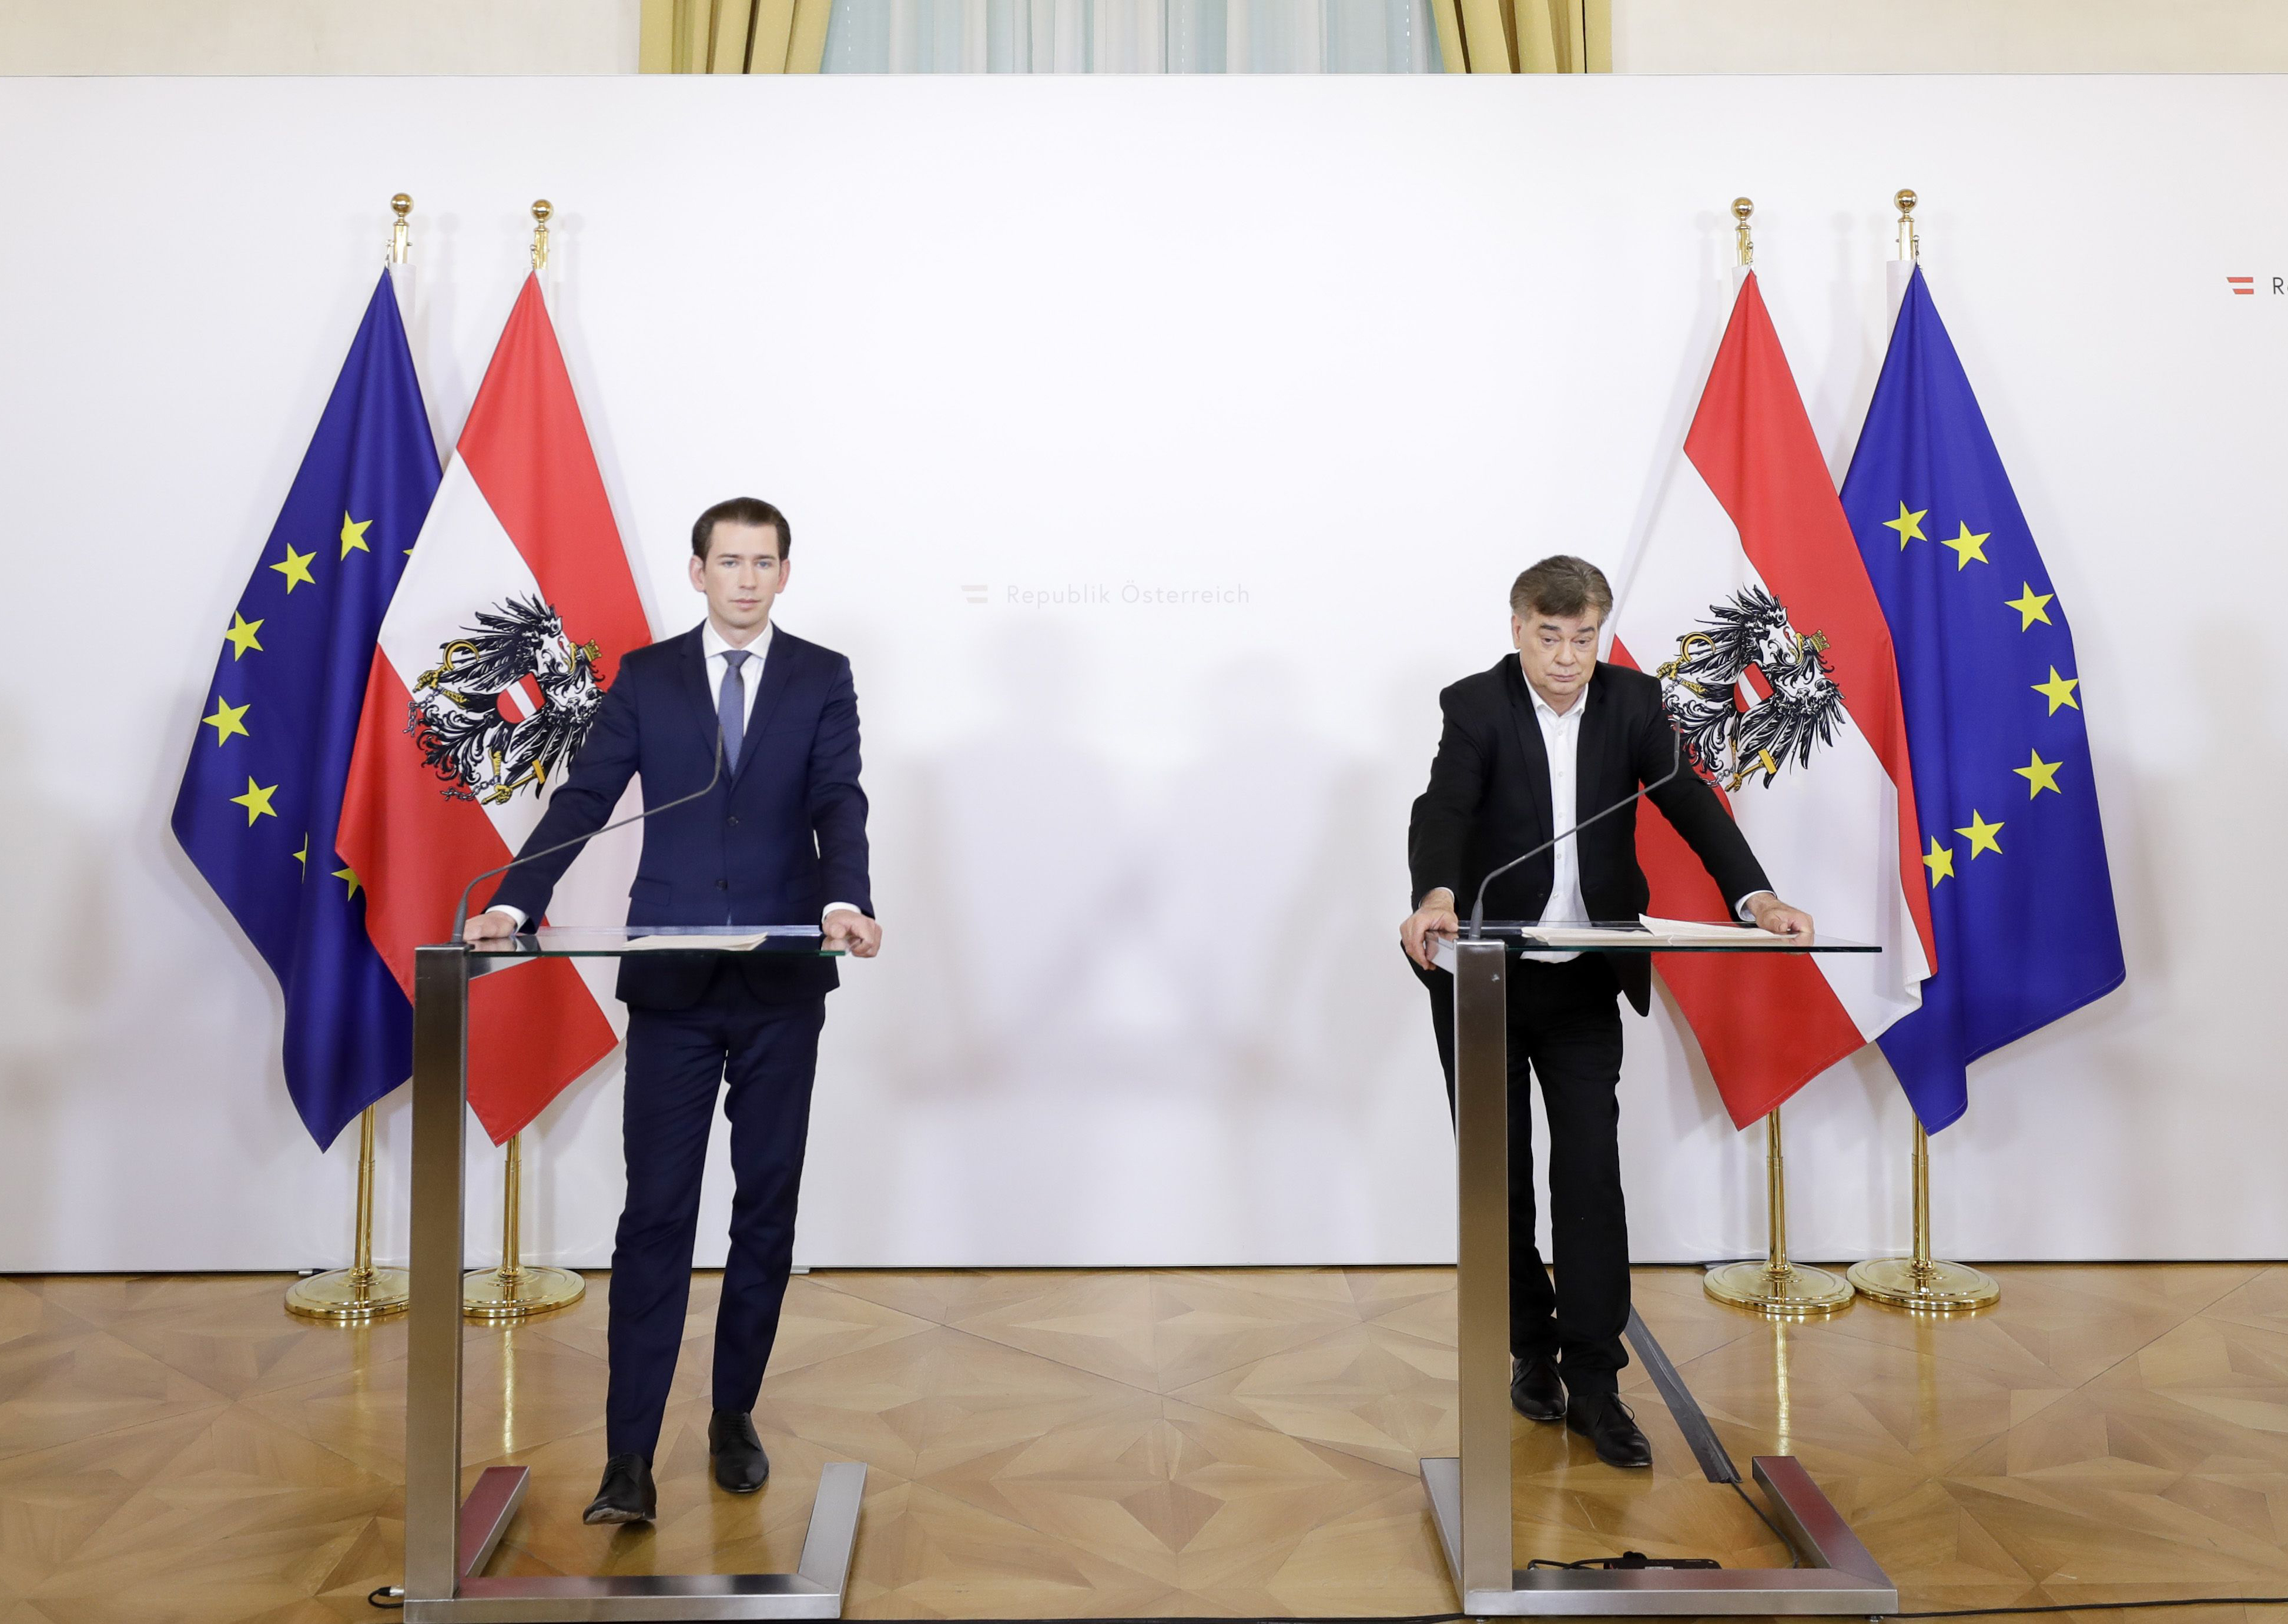 An zwei Rednerpulten zu sehen sind Sebastian Kurz (links) und Werner Kogler (rechts). Im Hintergrund sind zwei EU Fahnen und zwei Österreich Fahnen aufgestellt.